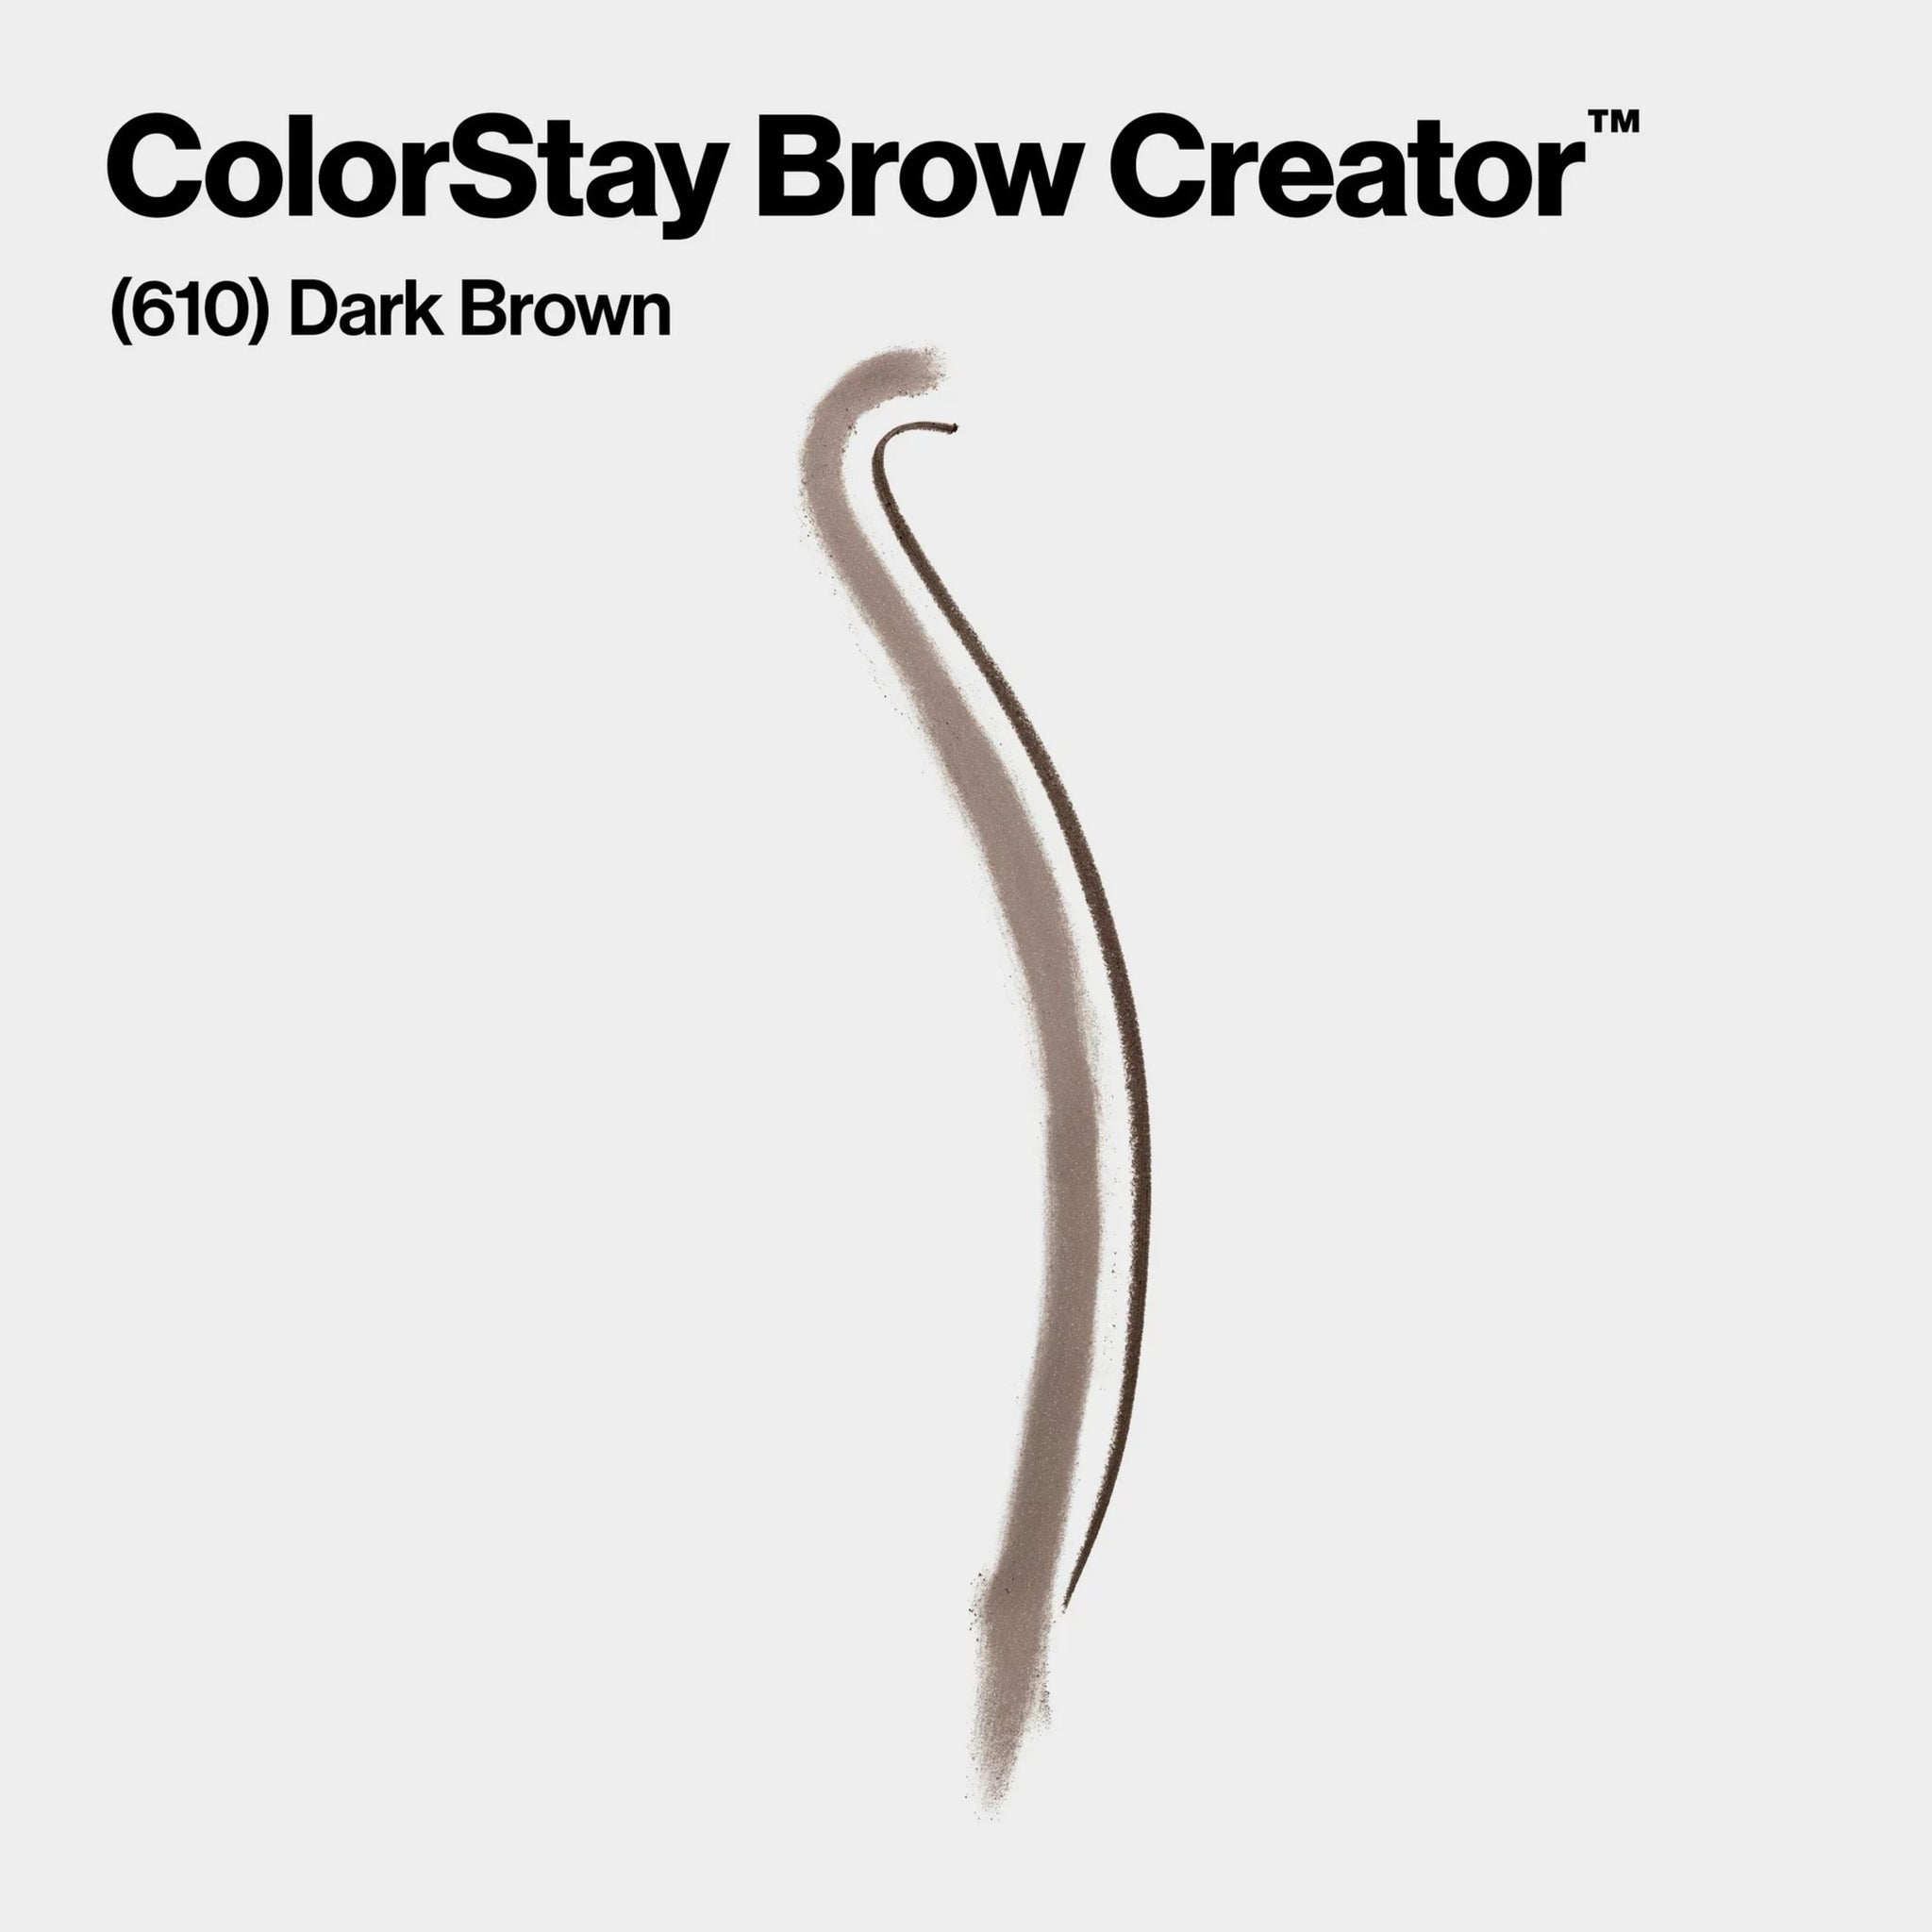 Colorstay Brow Pencil Creator